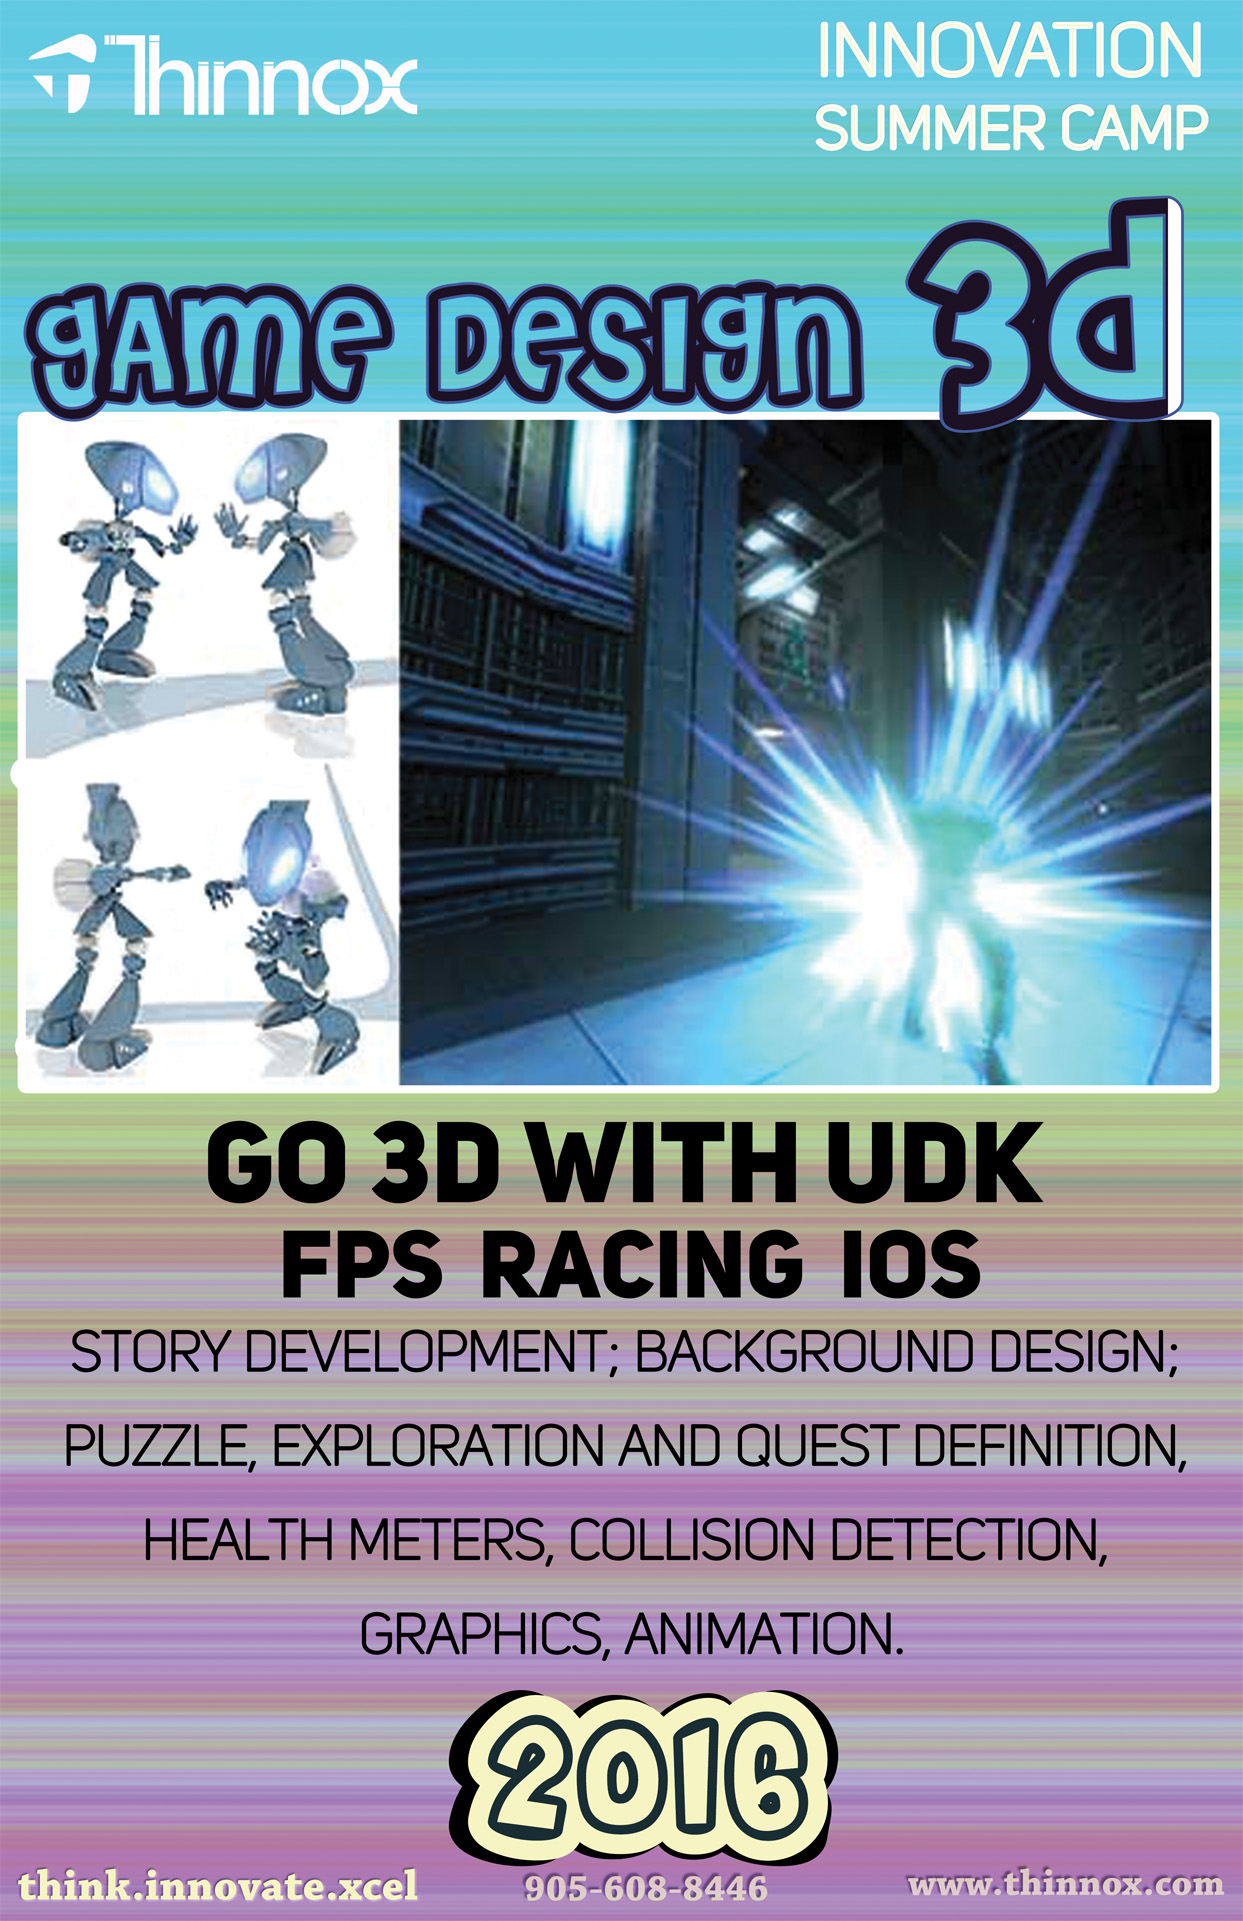 3D Game Design